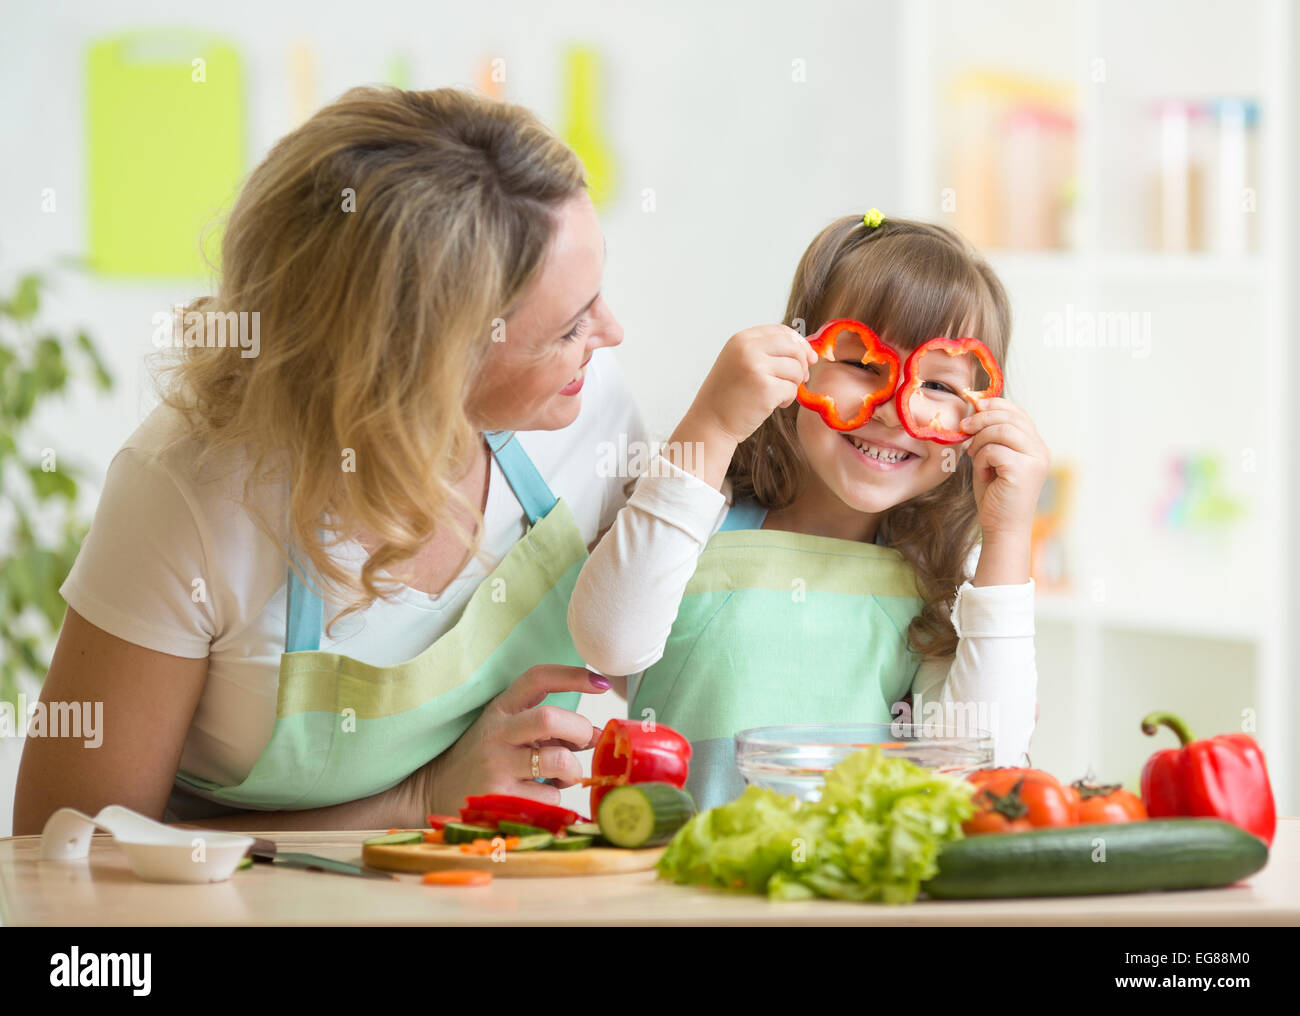 Mutter und Kind gesundes Essen zubereiten und dabei Spaß haben Stockfoto